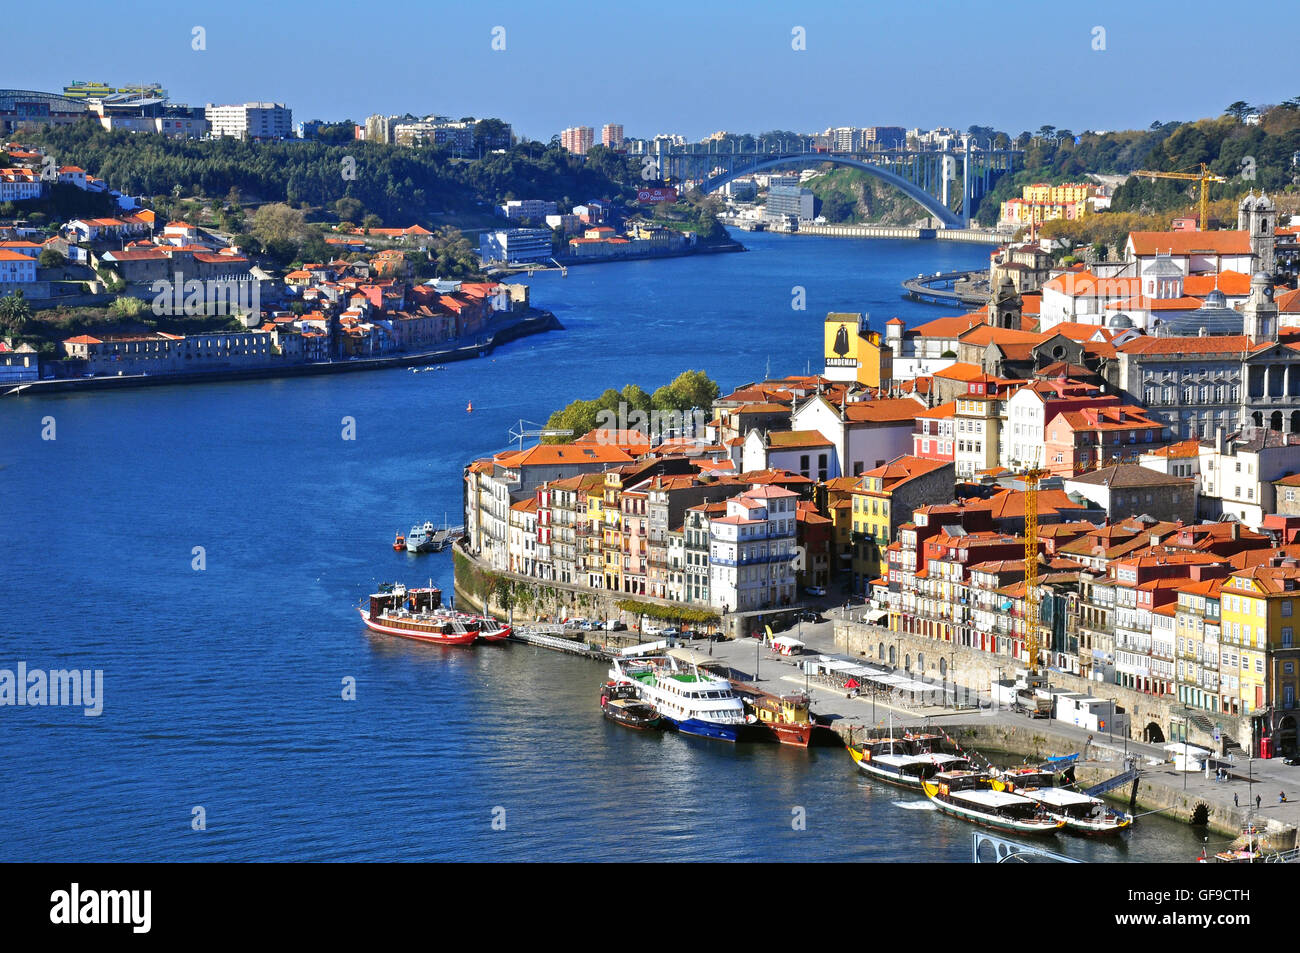 PORTO, Portogallo - 27 novembre: vista panoramica del centro cittadino di Porto il 27 novembre 2013. Il porto è una delle più antiche comunità cen Foto Stock